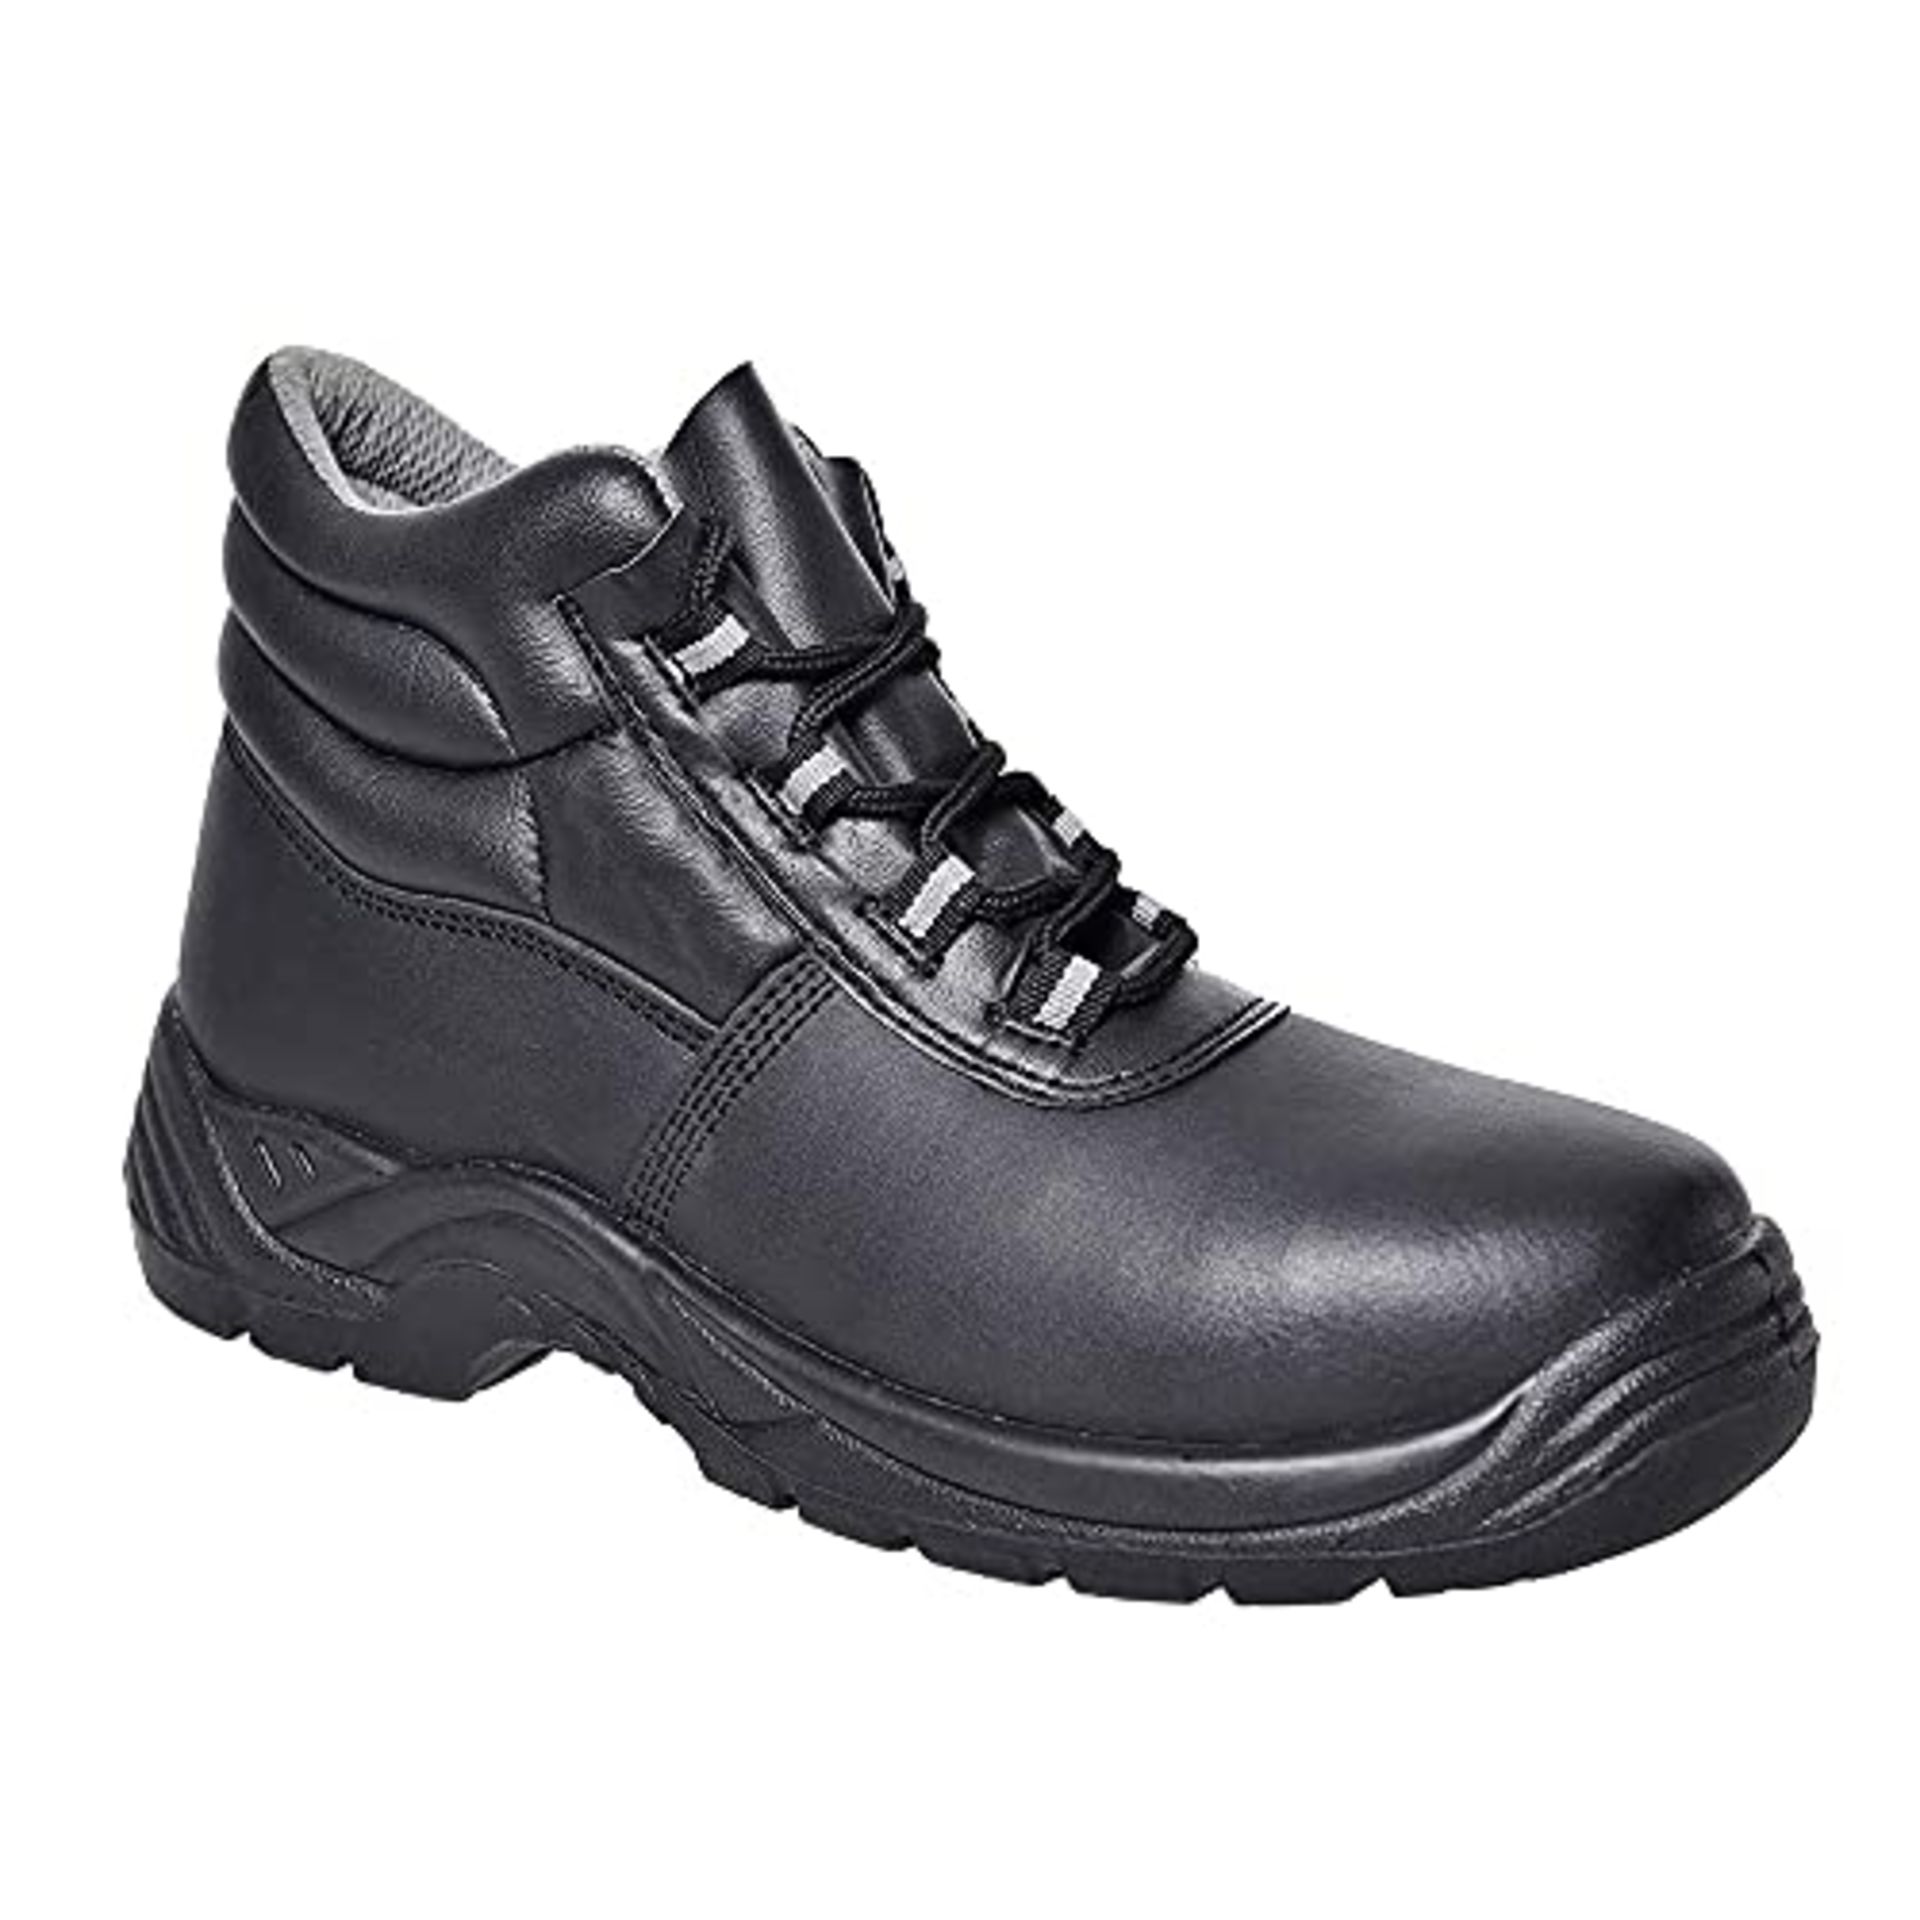 Portwest Portwest Compositelite Safety Boot S1P, Size: 37, Colour: Black, FC10BKR37